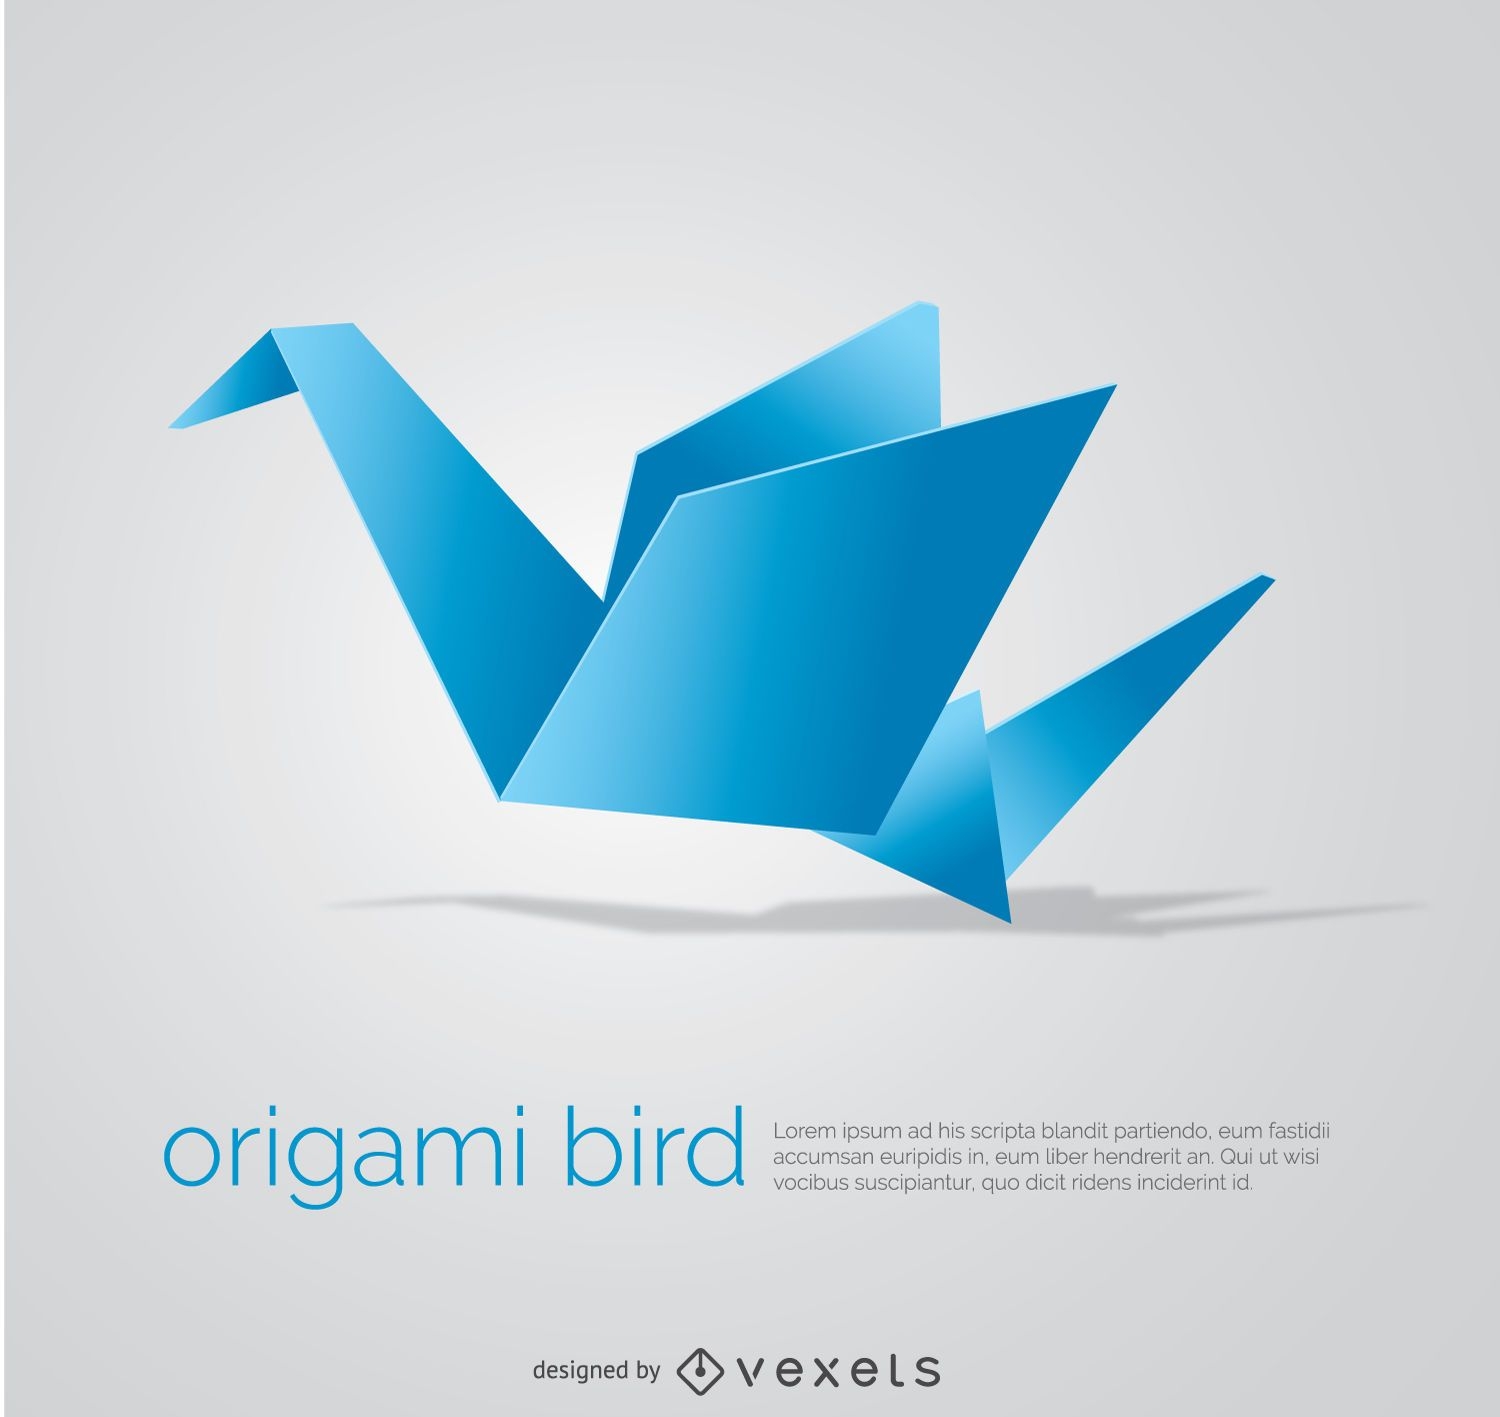 P?ssaro de origami